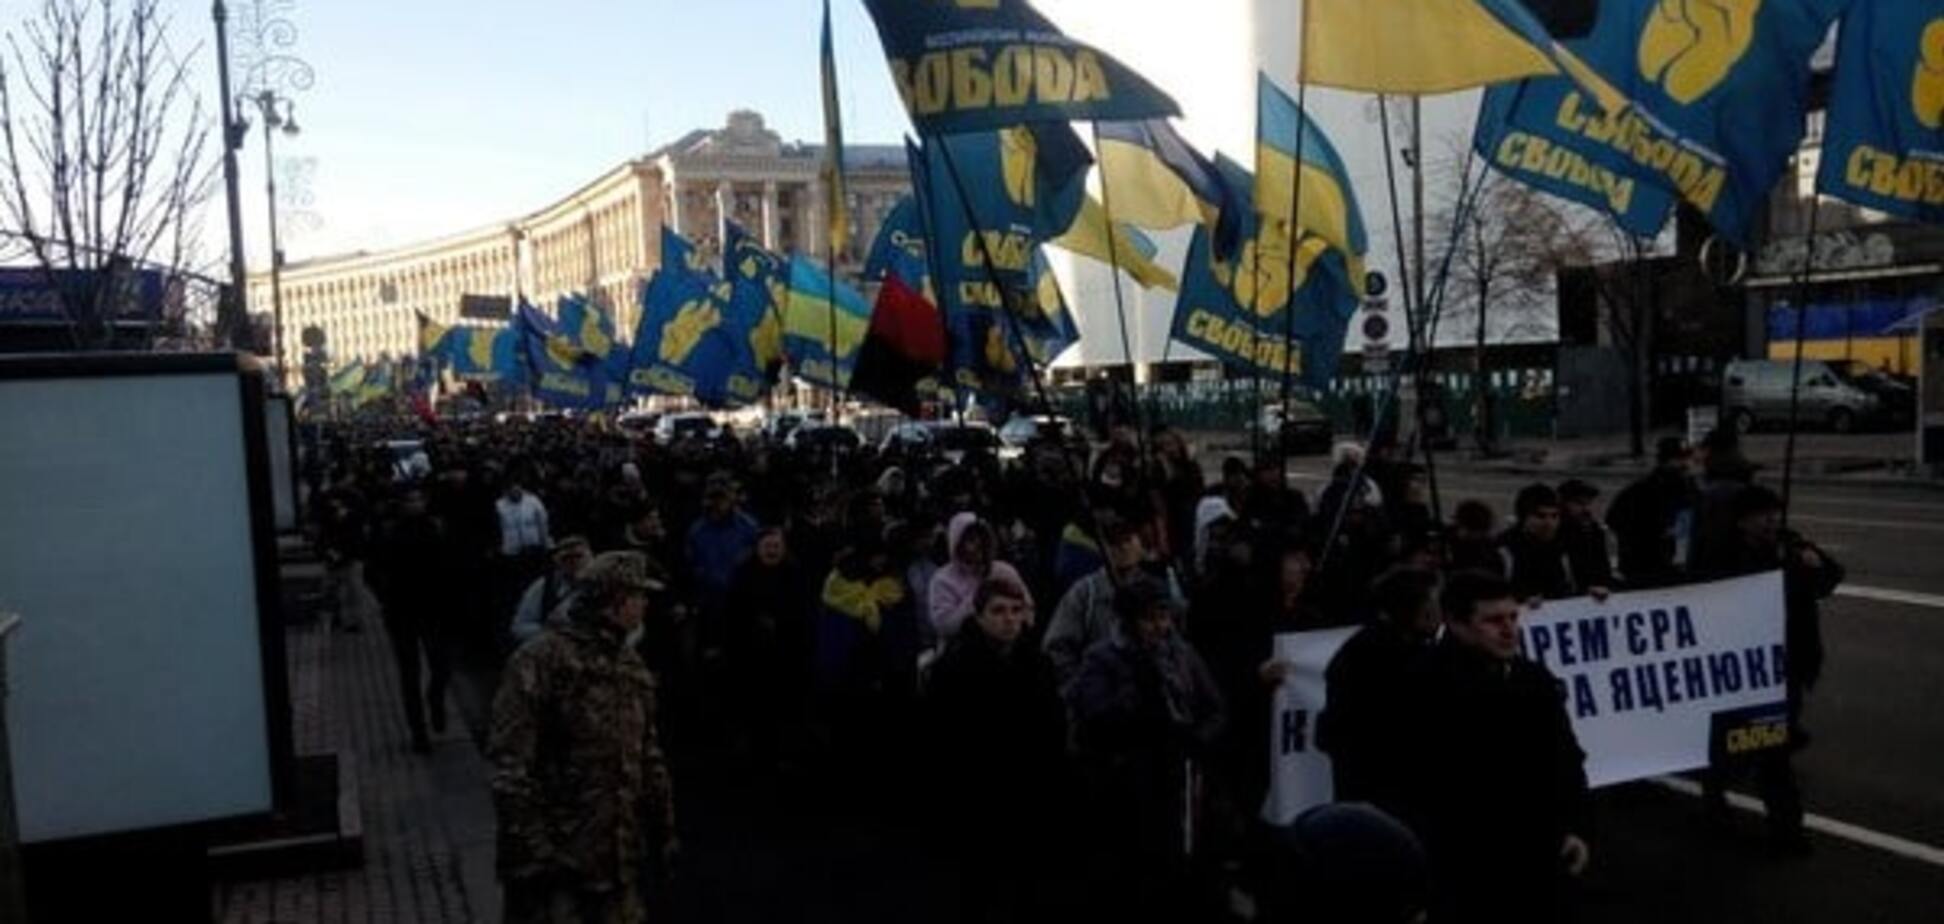 'Яценяку на гілляку!': на митинге в Киеве потребовали отставки Яценюка